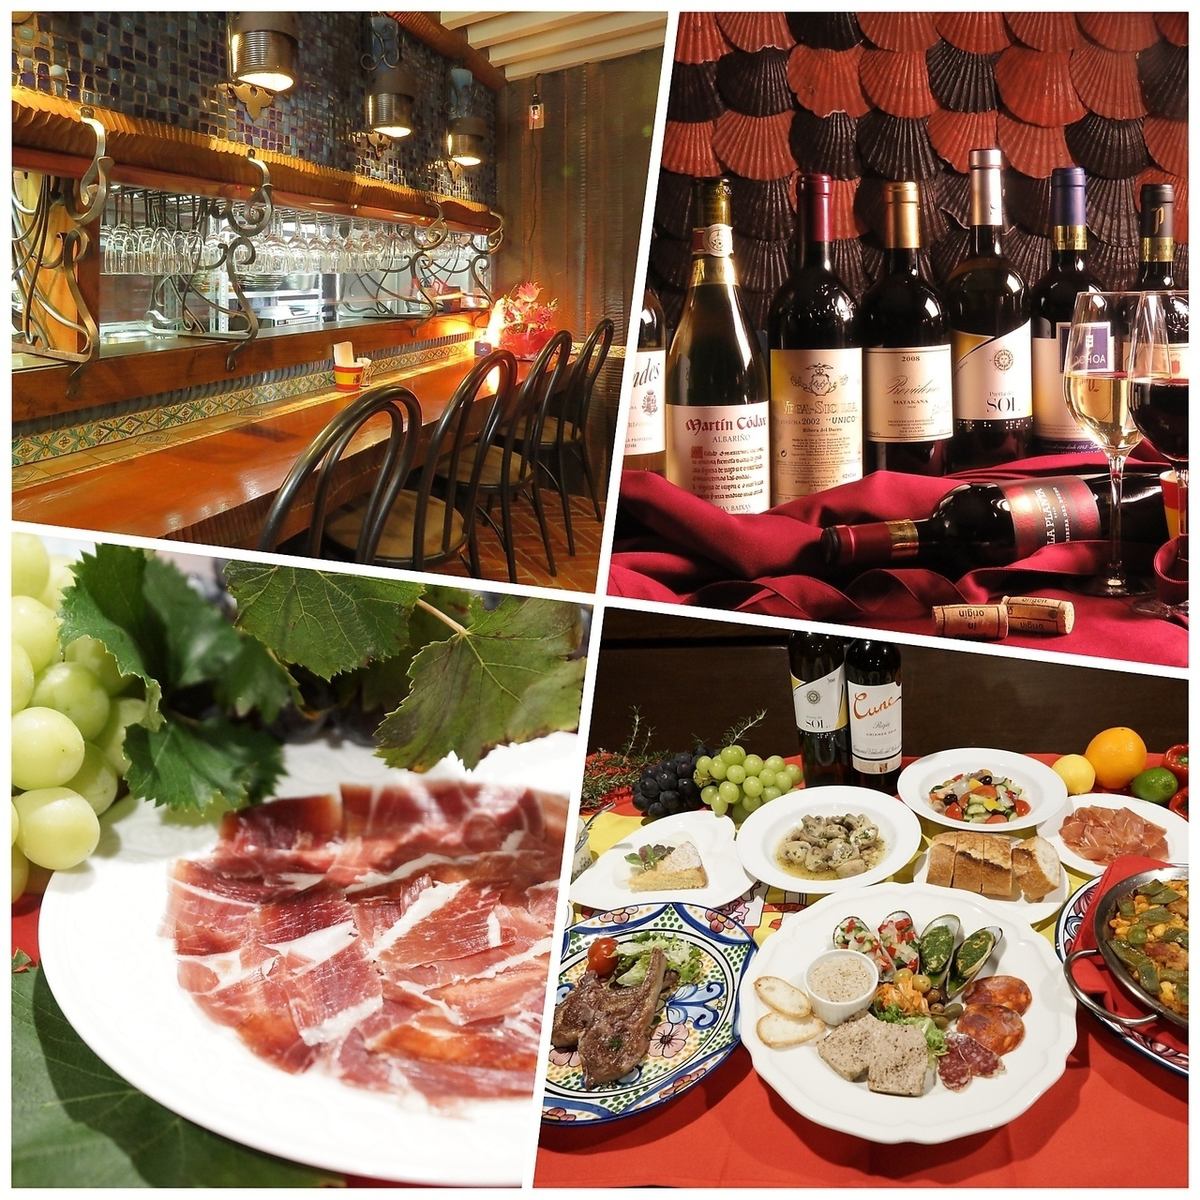 您可以在西班牙風格的餐廳享用精緻的西班牙美食和美酒的餐廳。